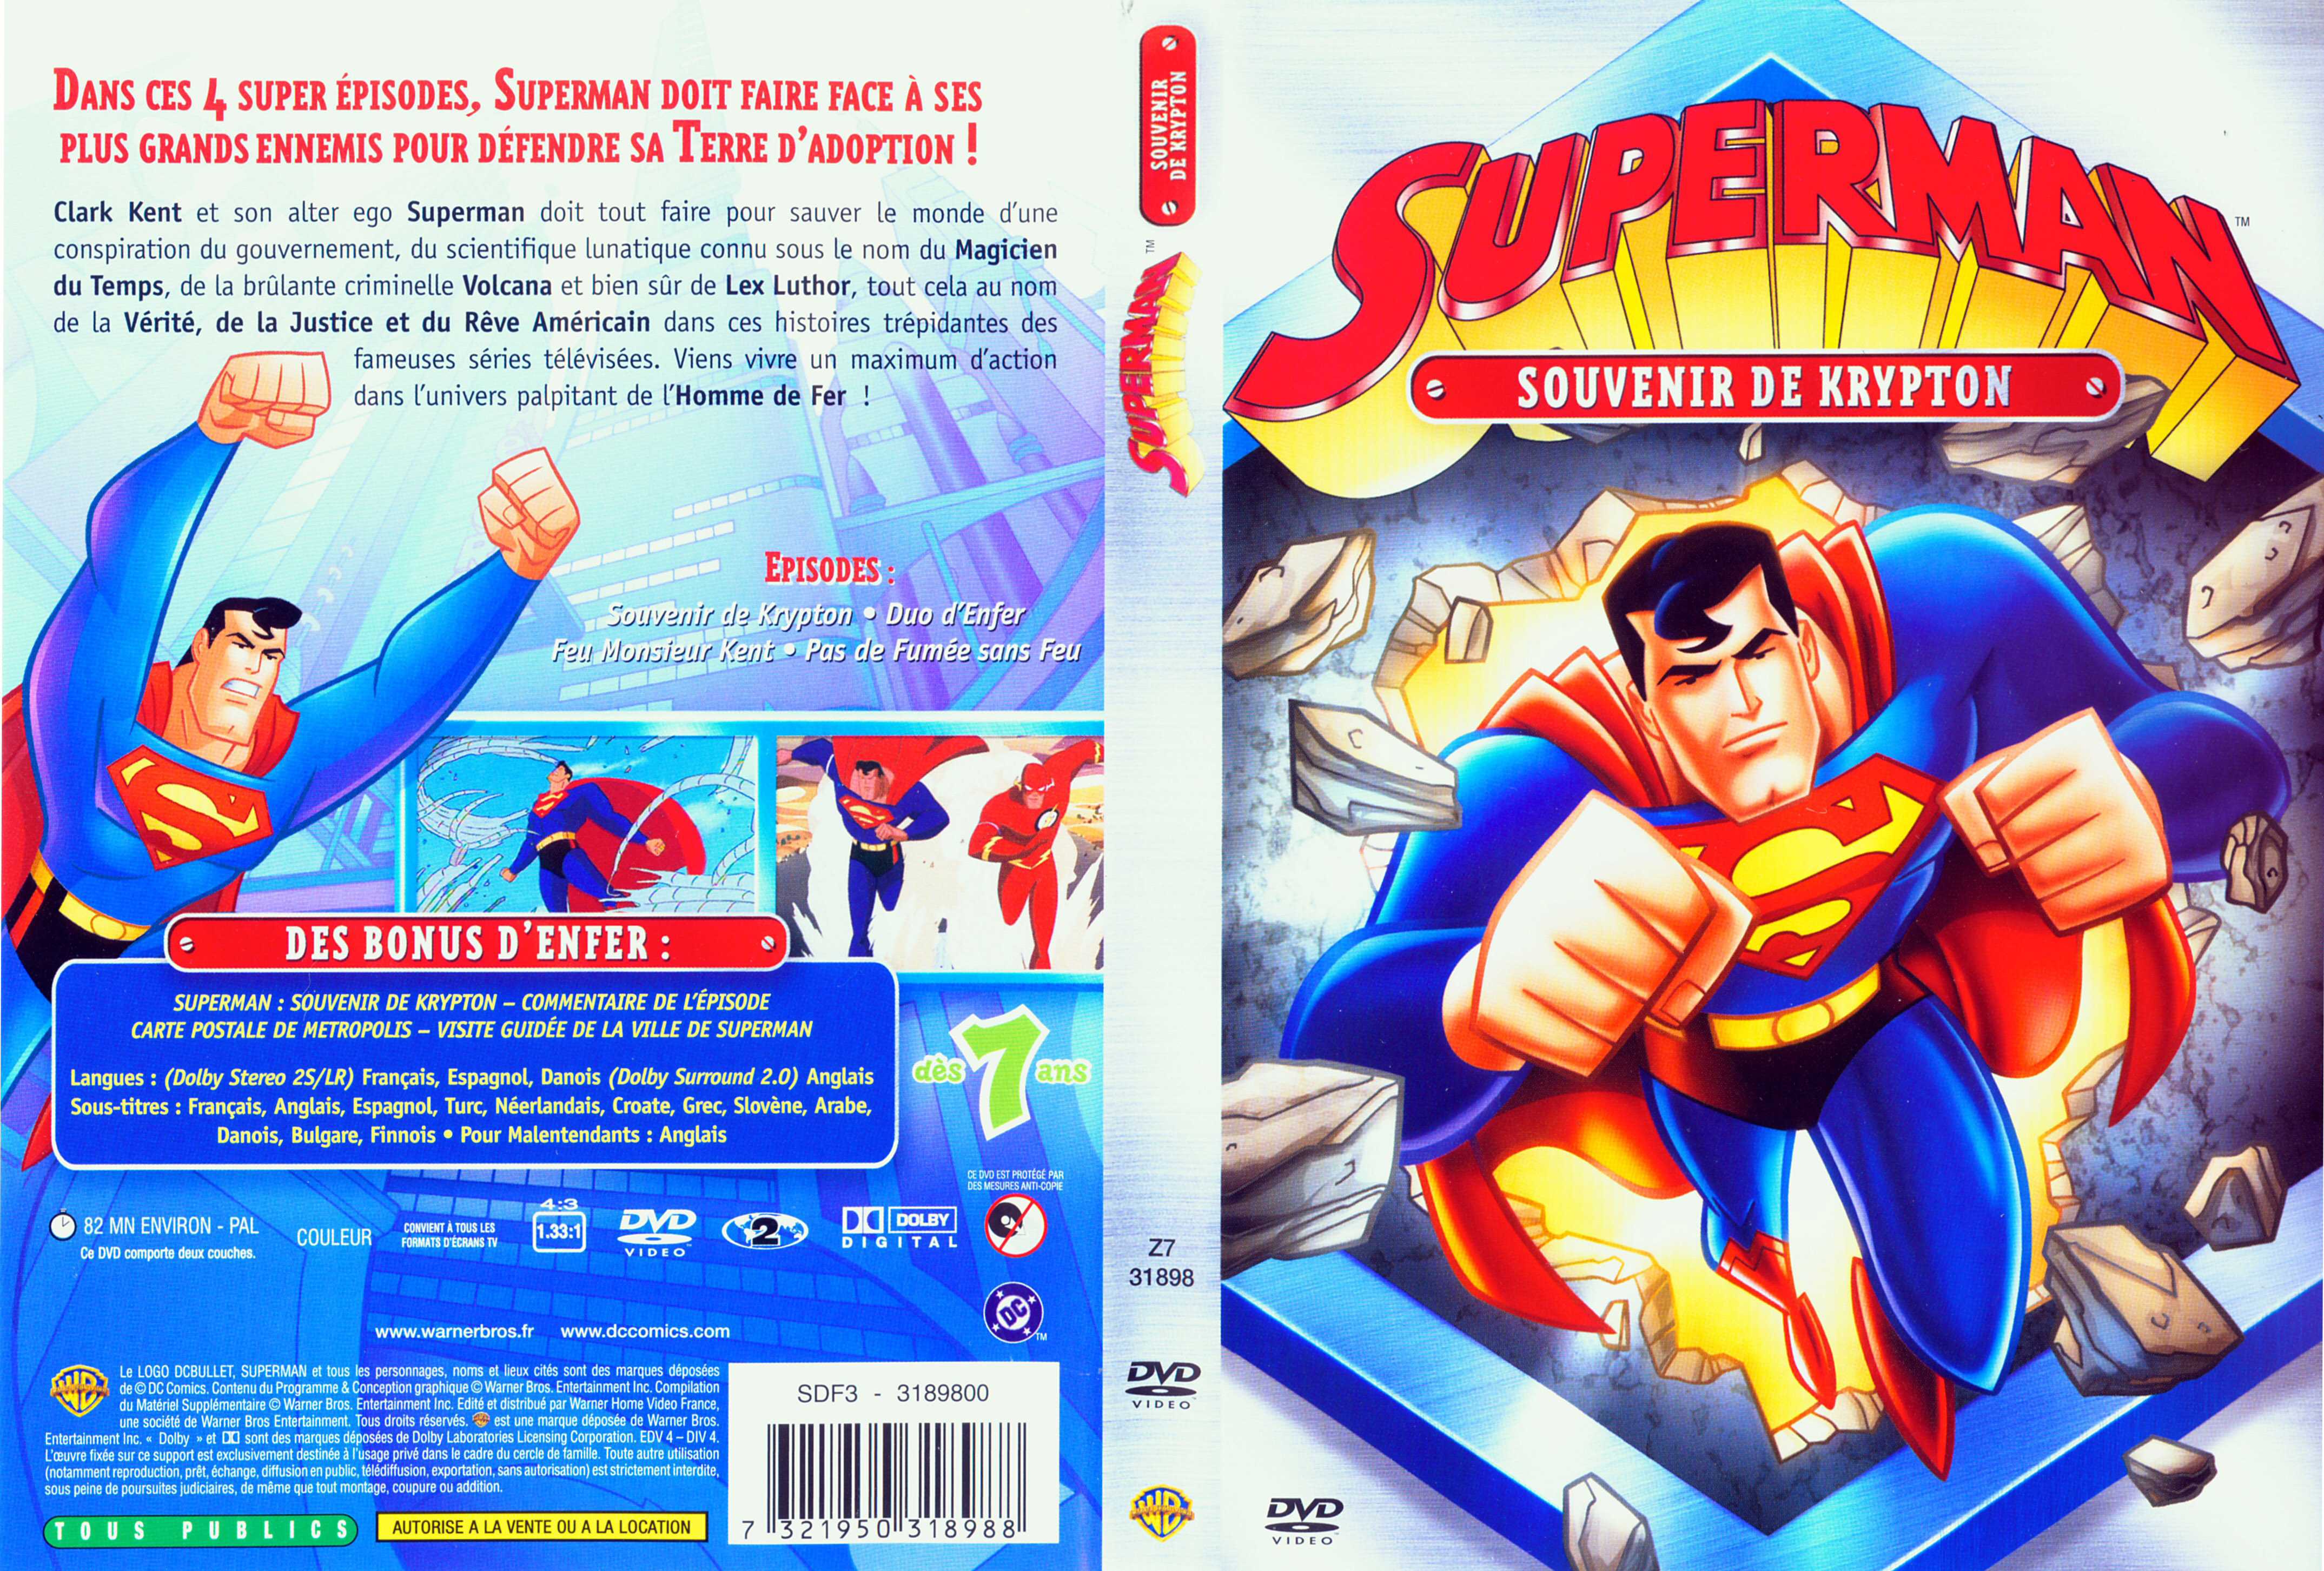 Jaquette DVD Superman (DA) souvenir de krypton